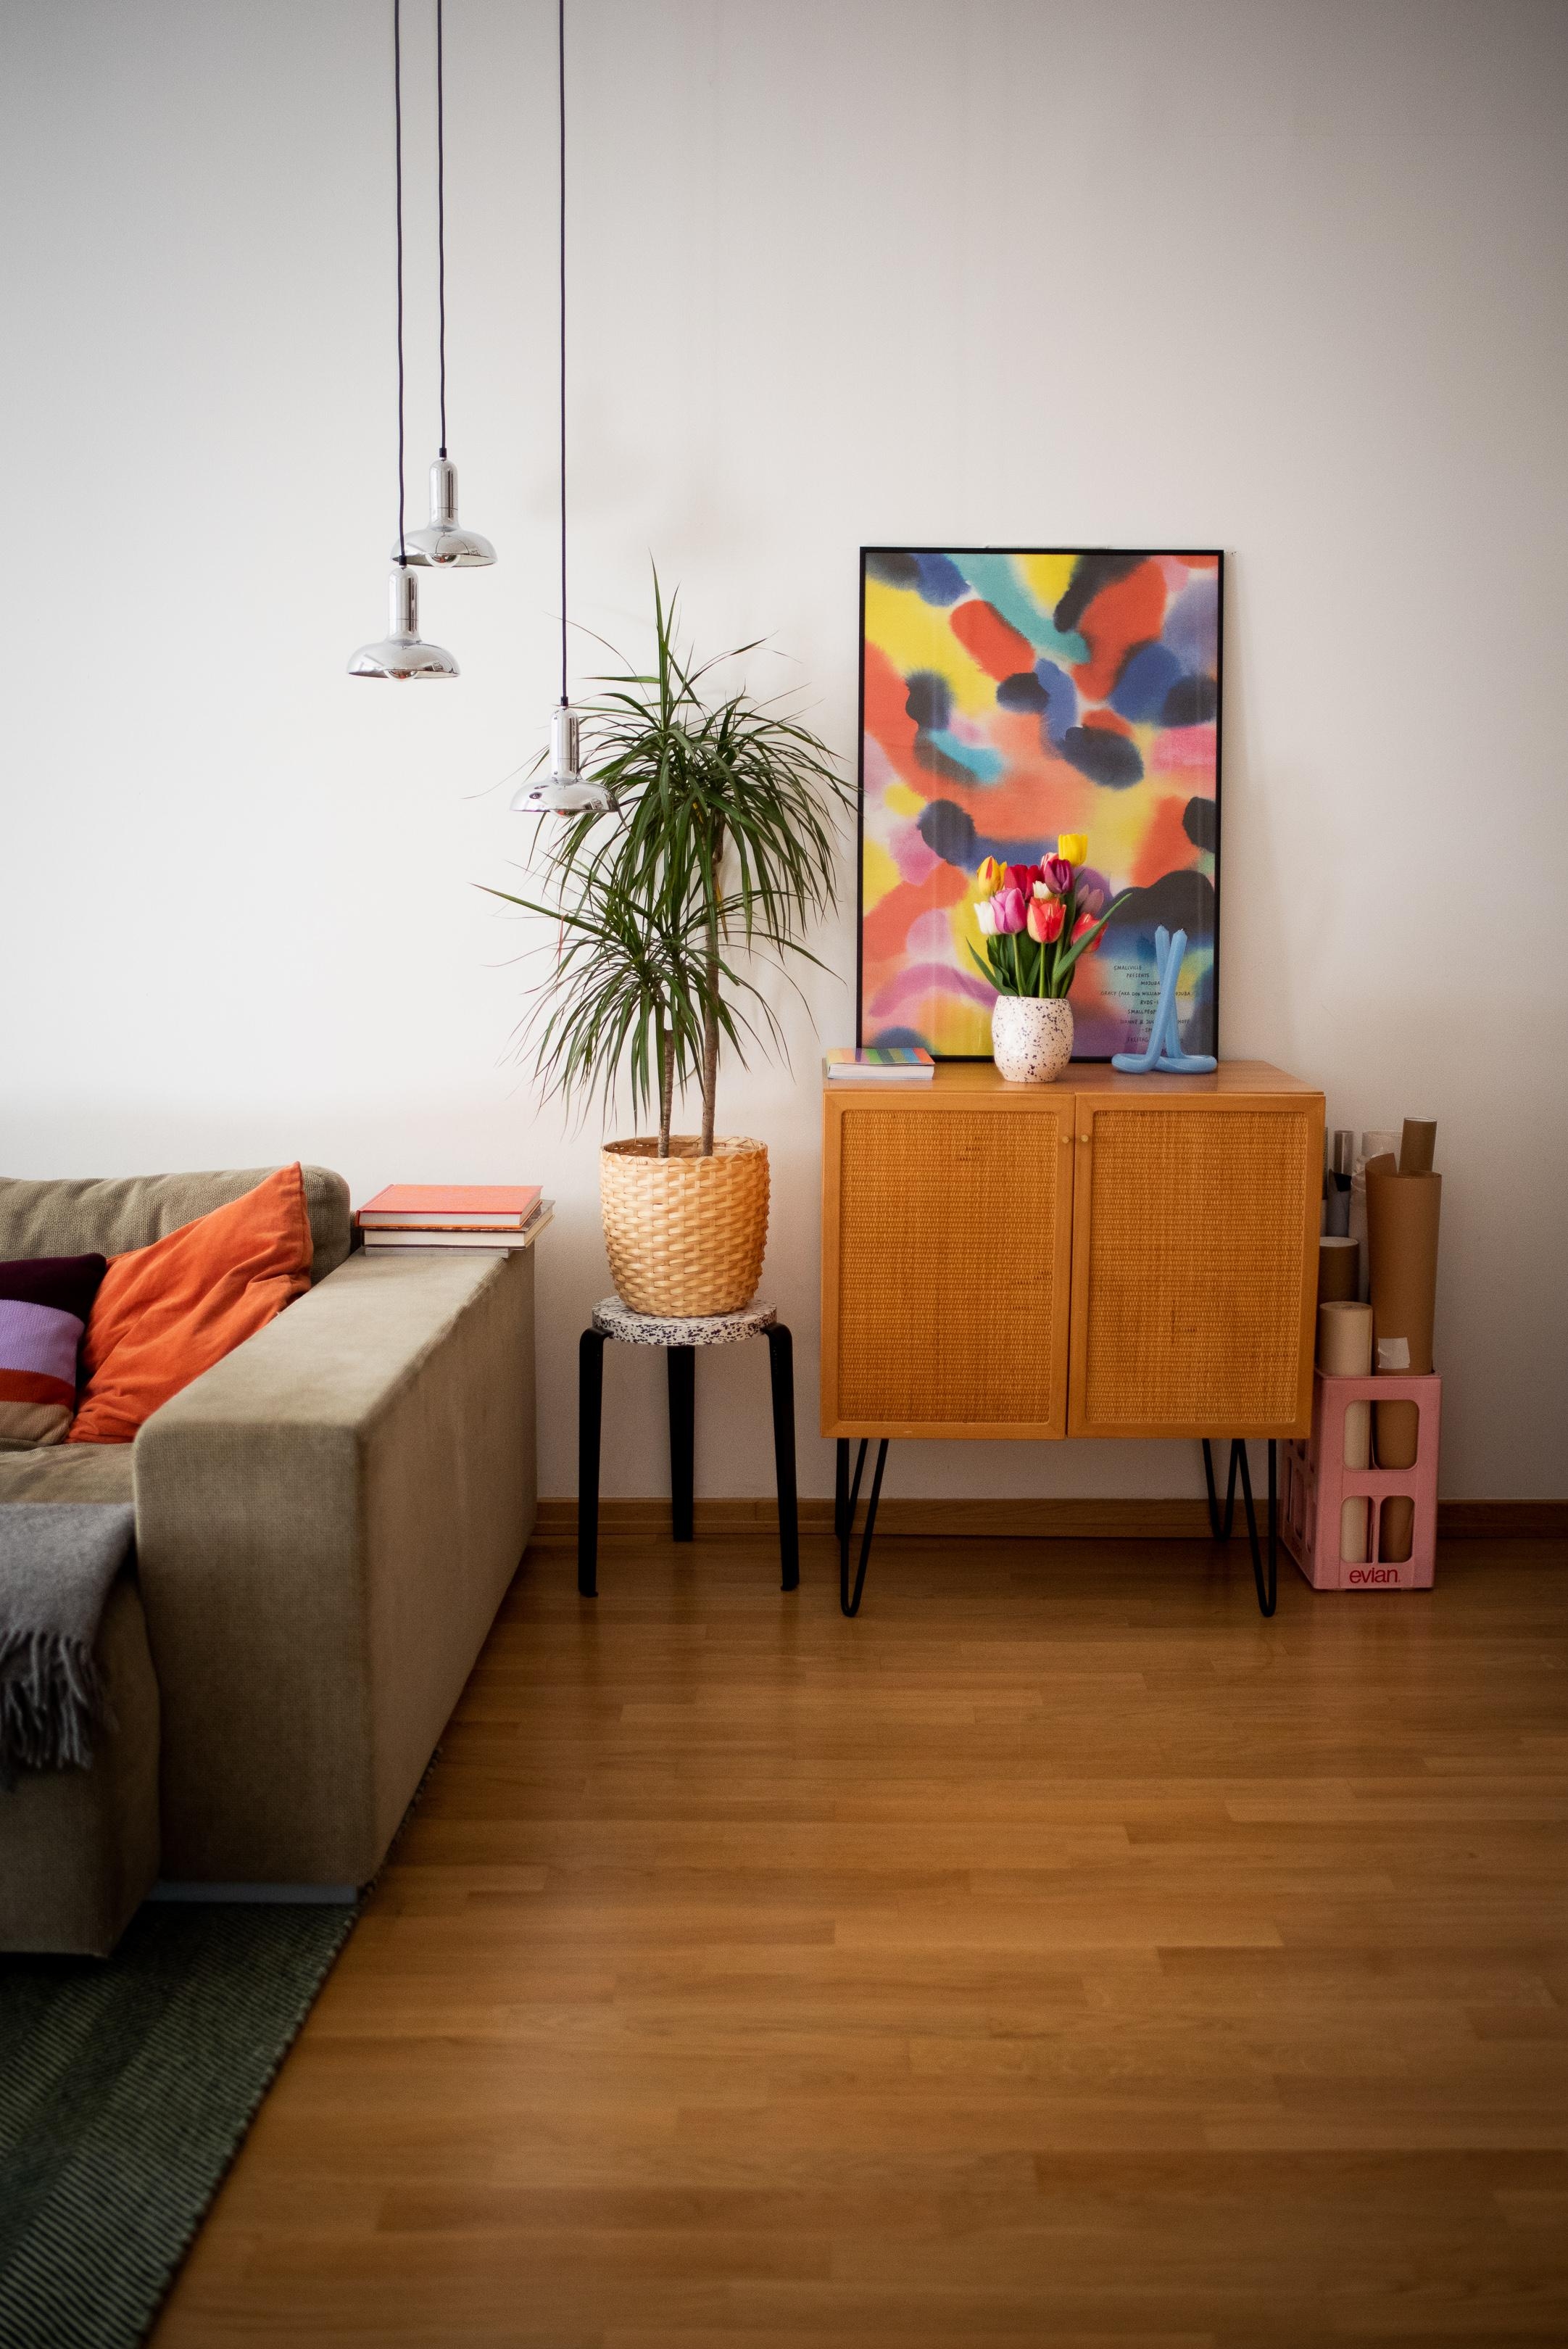 Farben machen glücklich #colourfulhome #vintage #wohnzimmer #tulpen #pflanzen #sofa #lampen